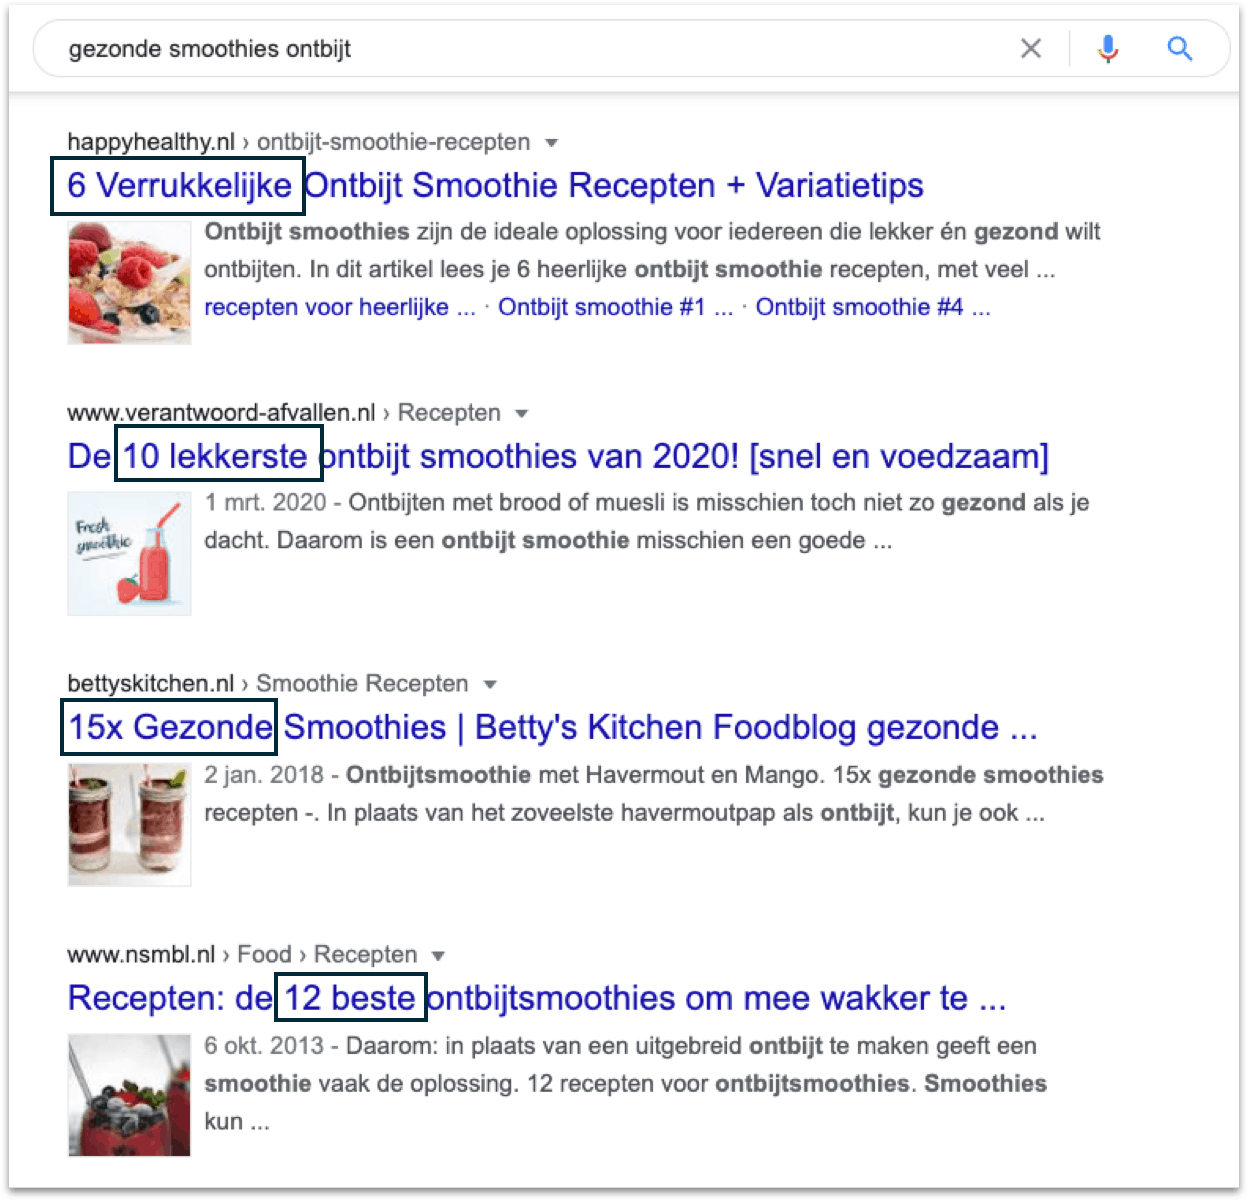 In dit voorbeeld zie je dat alle topposities recepten zijn. Het is dus niet aannemelijk dat je gaat ranken met een informatief blog over de voordelen van havermoutkoekjes. Google gaat er immers vanuit dat degene die de zoekopdracht uitvoert, op zoek is naar een recept.